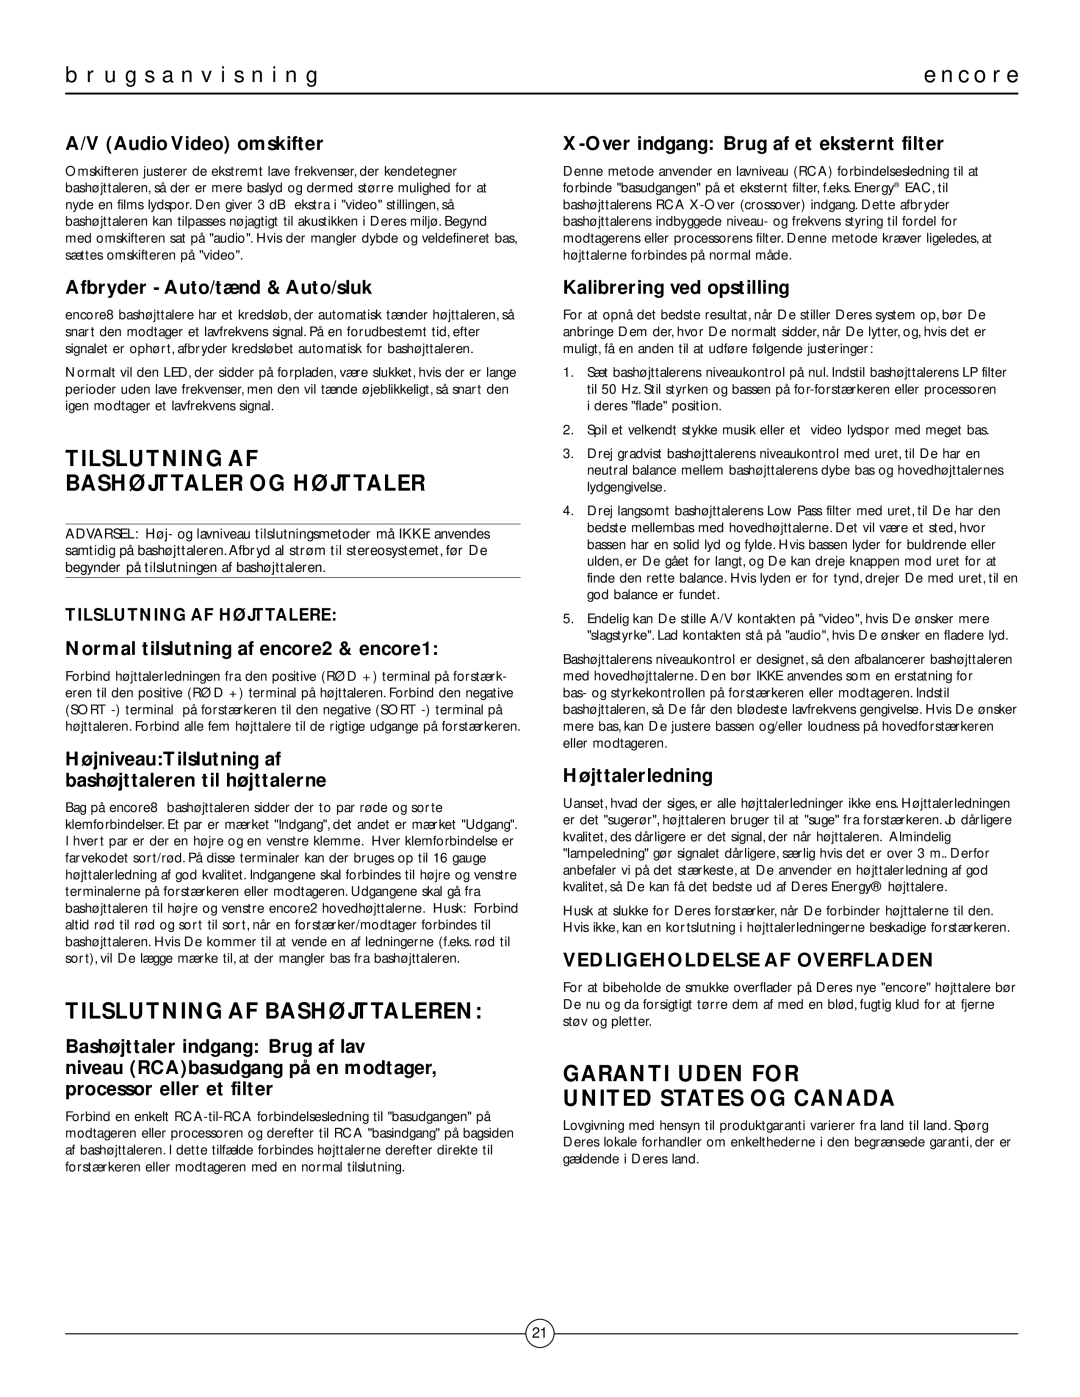 Energy Speaker Systems MUSICAL TRUTHTM owner manual Tilslutning Af Bashøjttaler Og Højttaler, Tilslutning Af Bashøjttaleren 